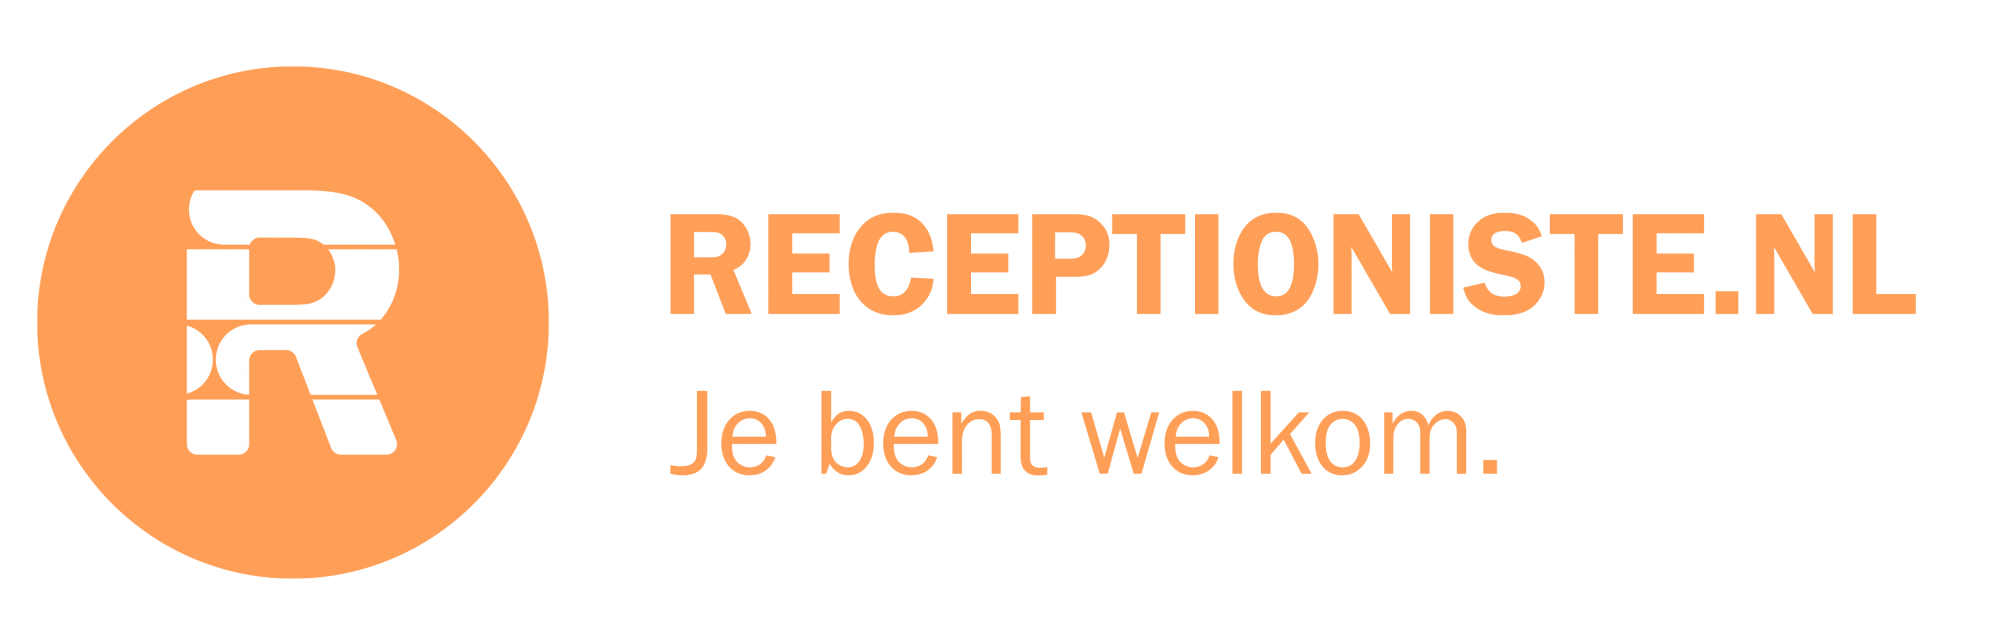 Receptioniste.nl logo